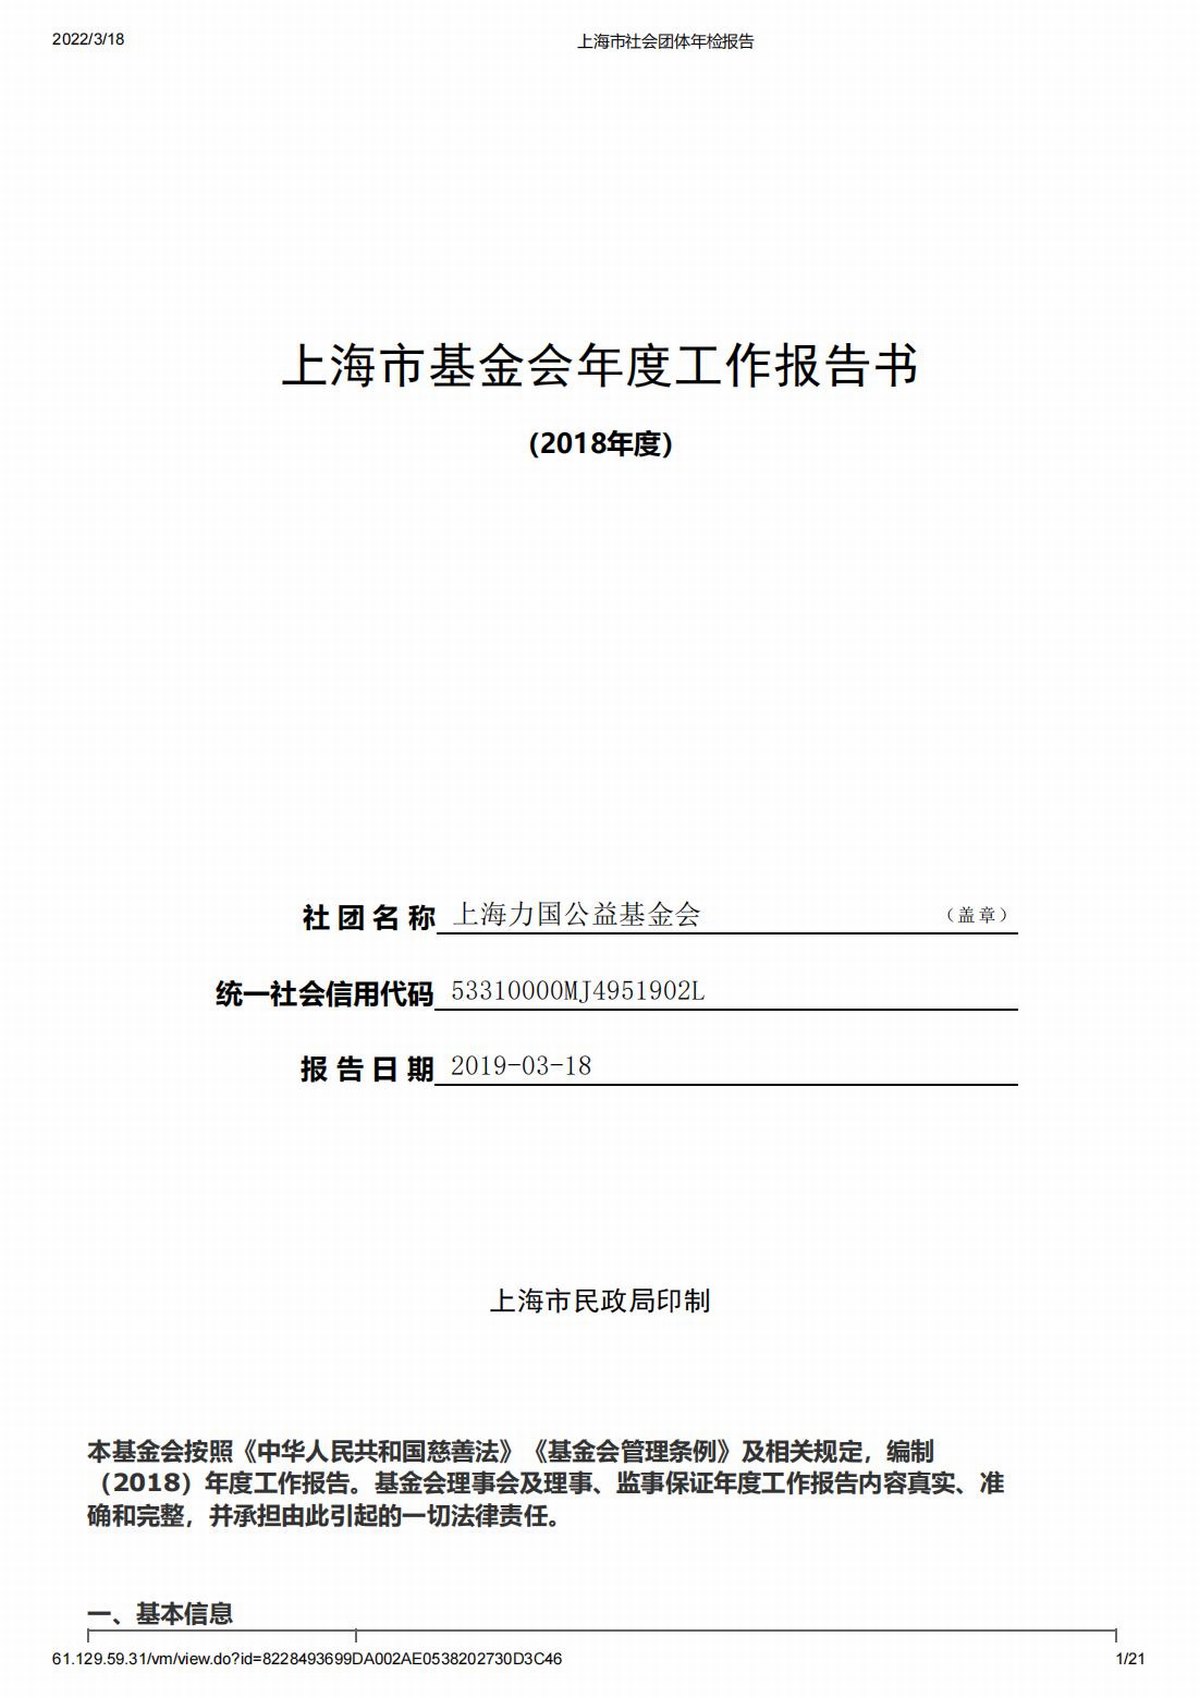 2018上海力國公益基金會年檢報告